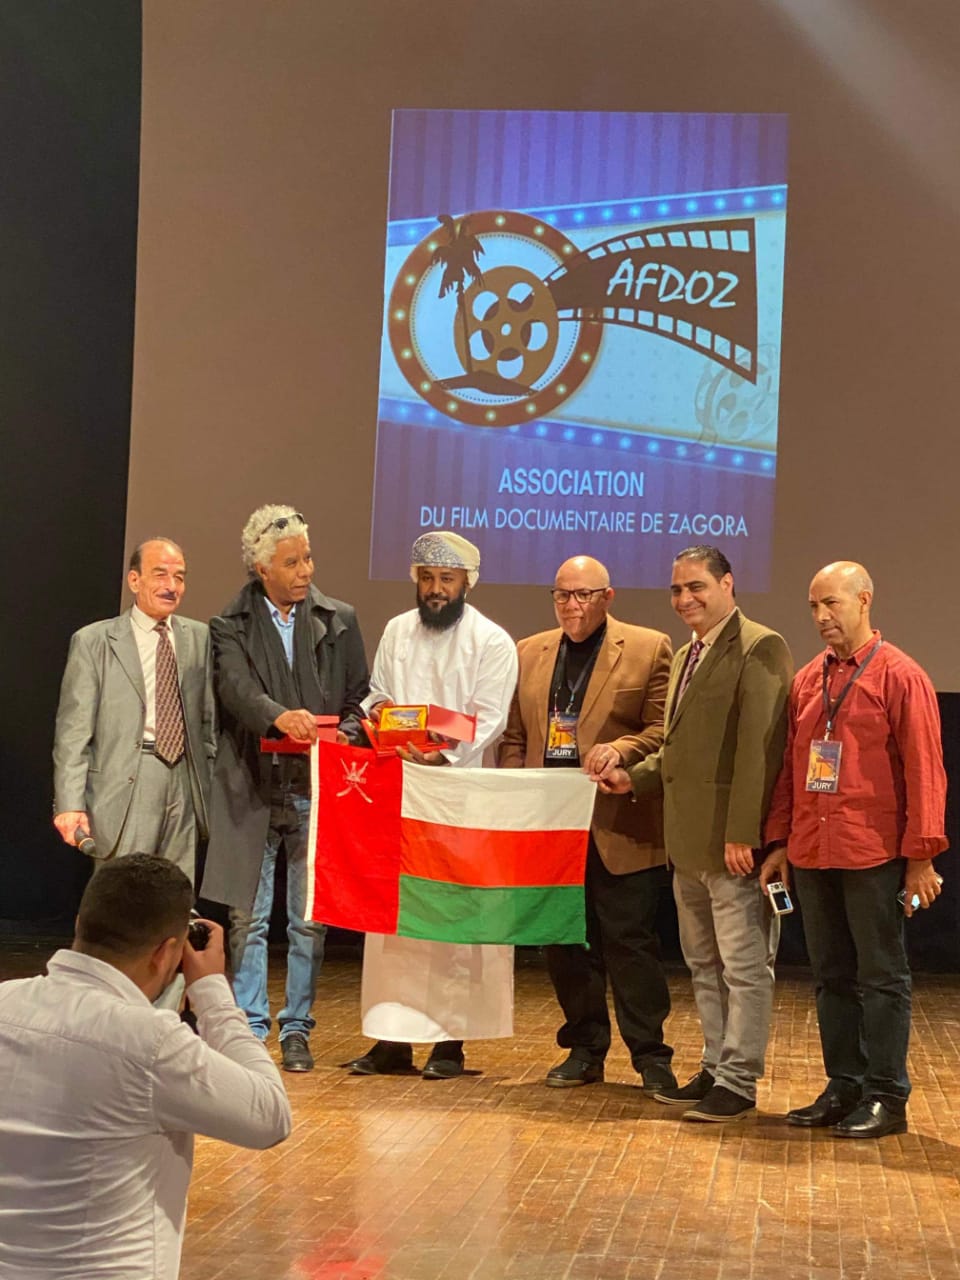 الفيلم العماني الوثائقي "أفيولايتي" يحصد  الجوائز في المهرجان الدولي العربي الإفريقي بالمغرب